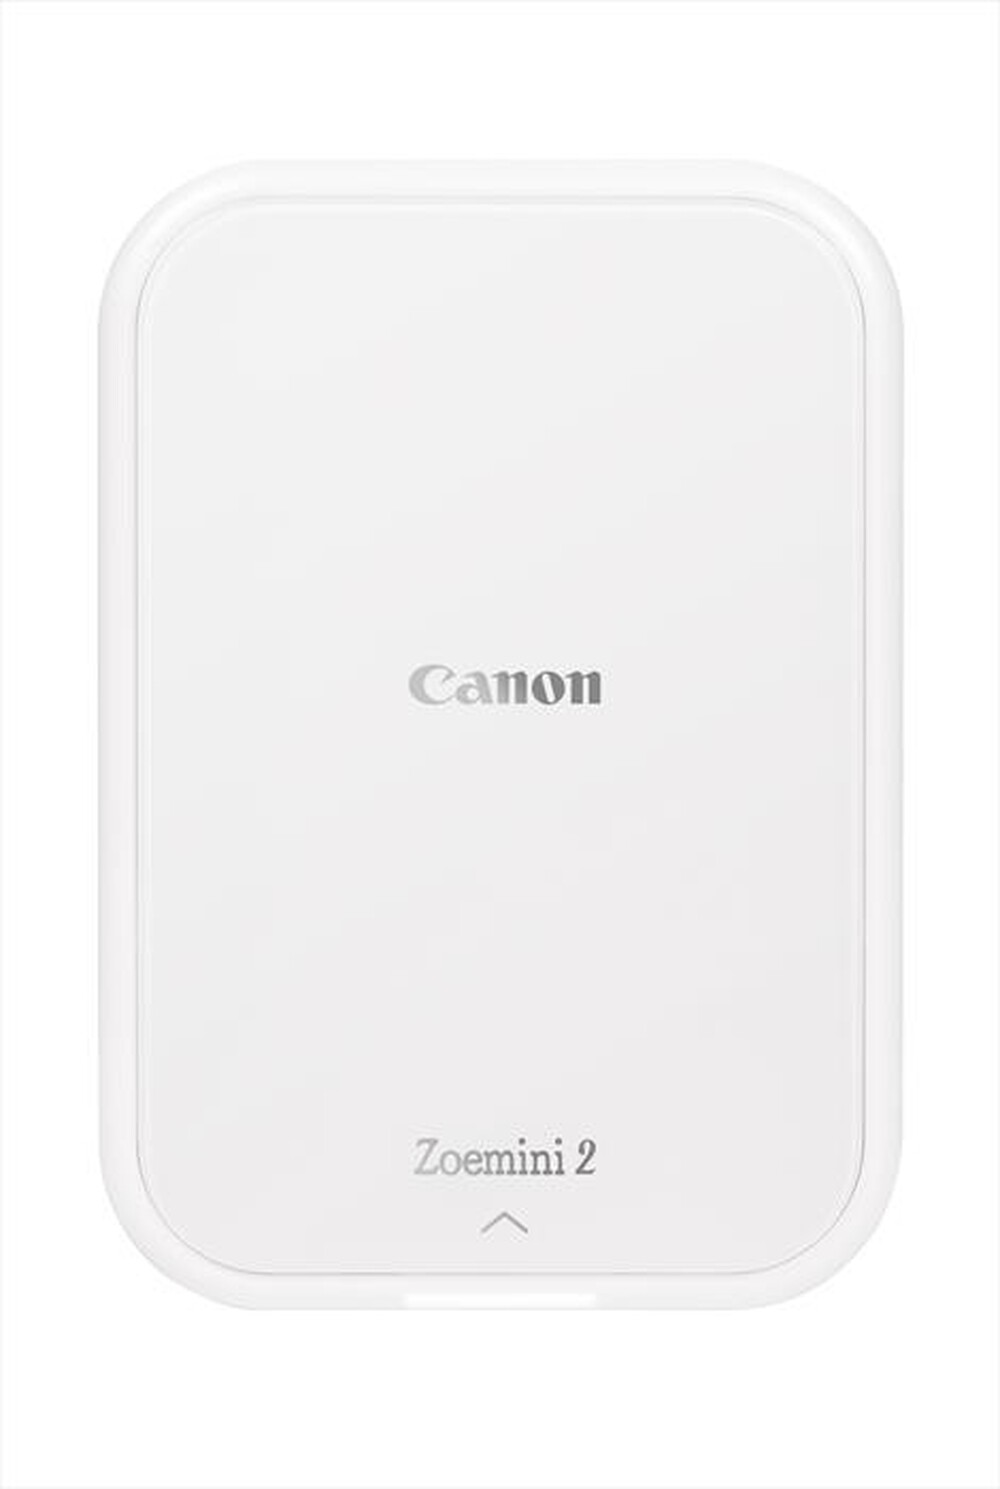 "CANON - Stampante fotografica ricaricabile ZOEMINI 2-Pearl White & Silver"